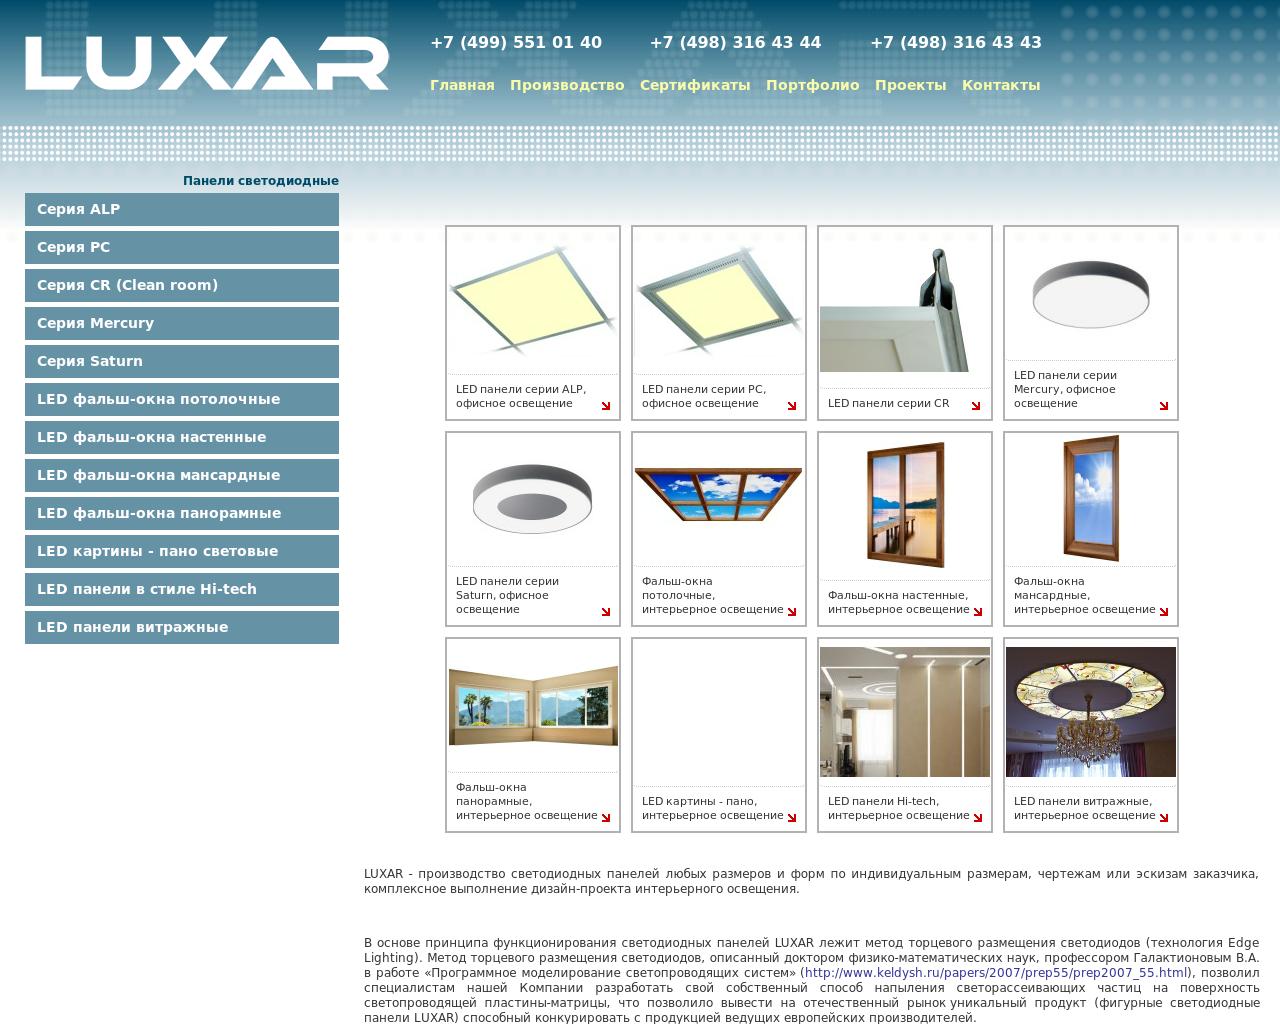 Изображение сайта luxar.su в разрешении 1280x1024